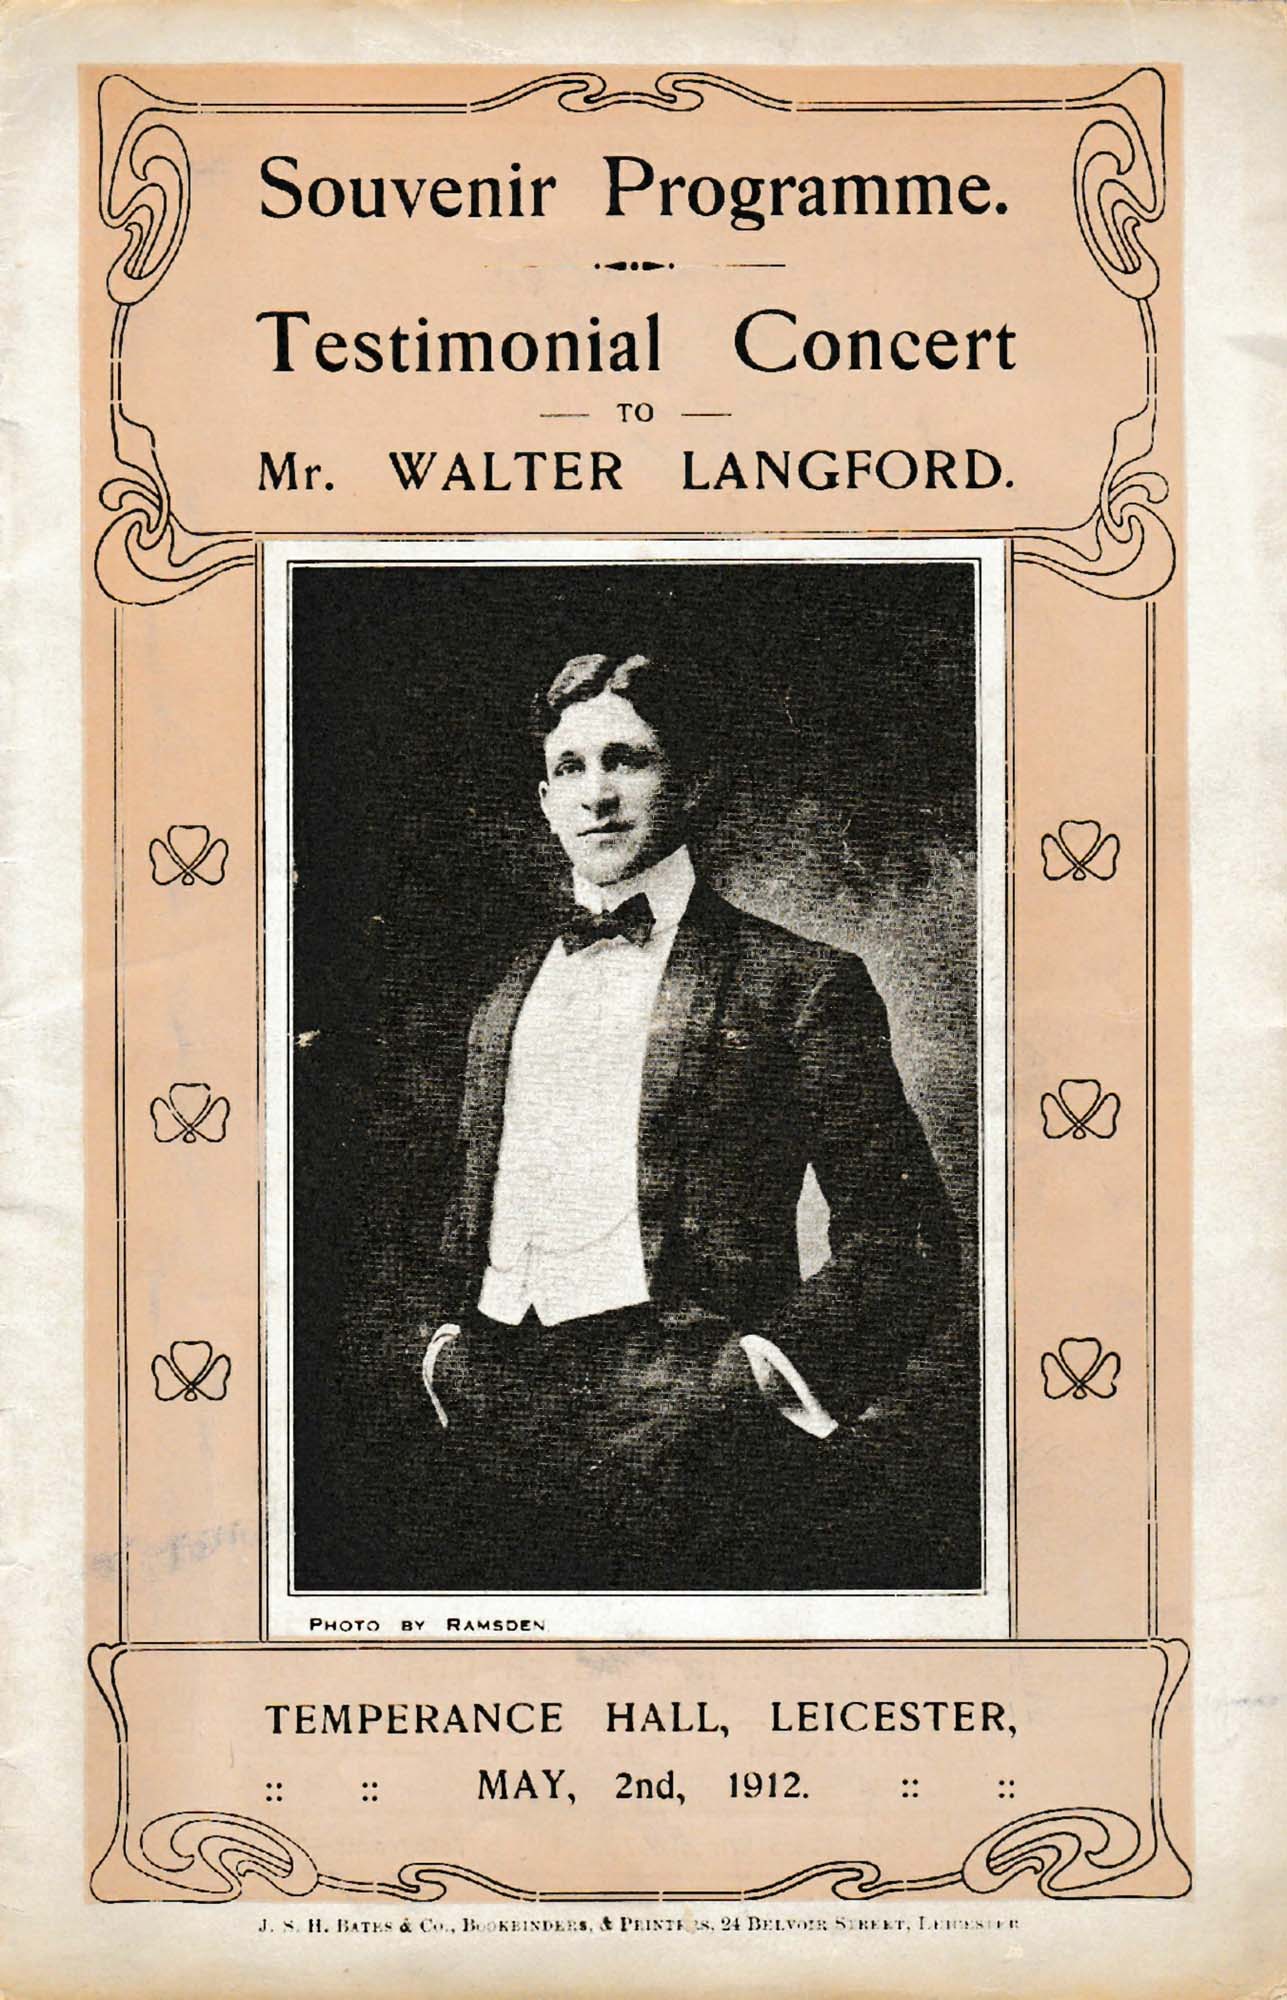 Souvenir programme from a Walter Langford Concert, 1912 - David Garratt and www.arthurlloyd.co.uk